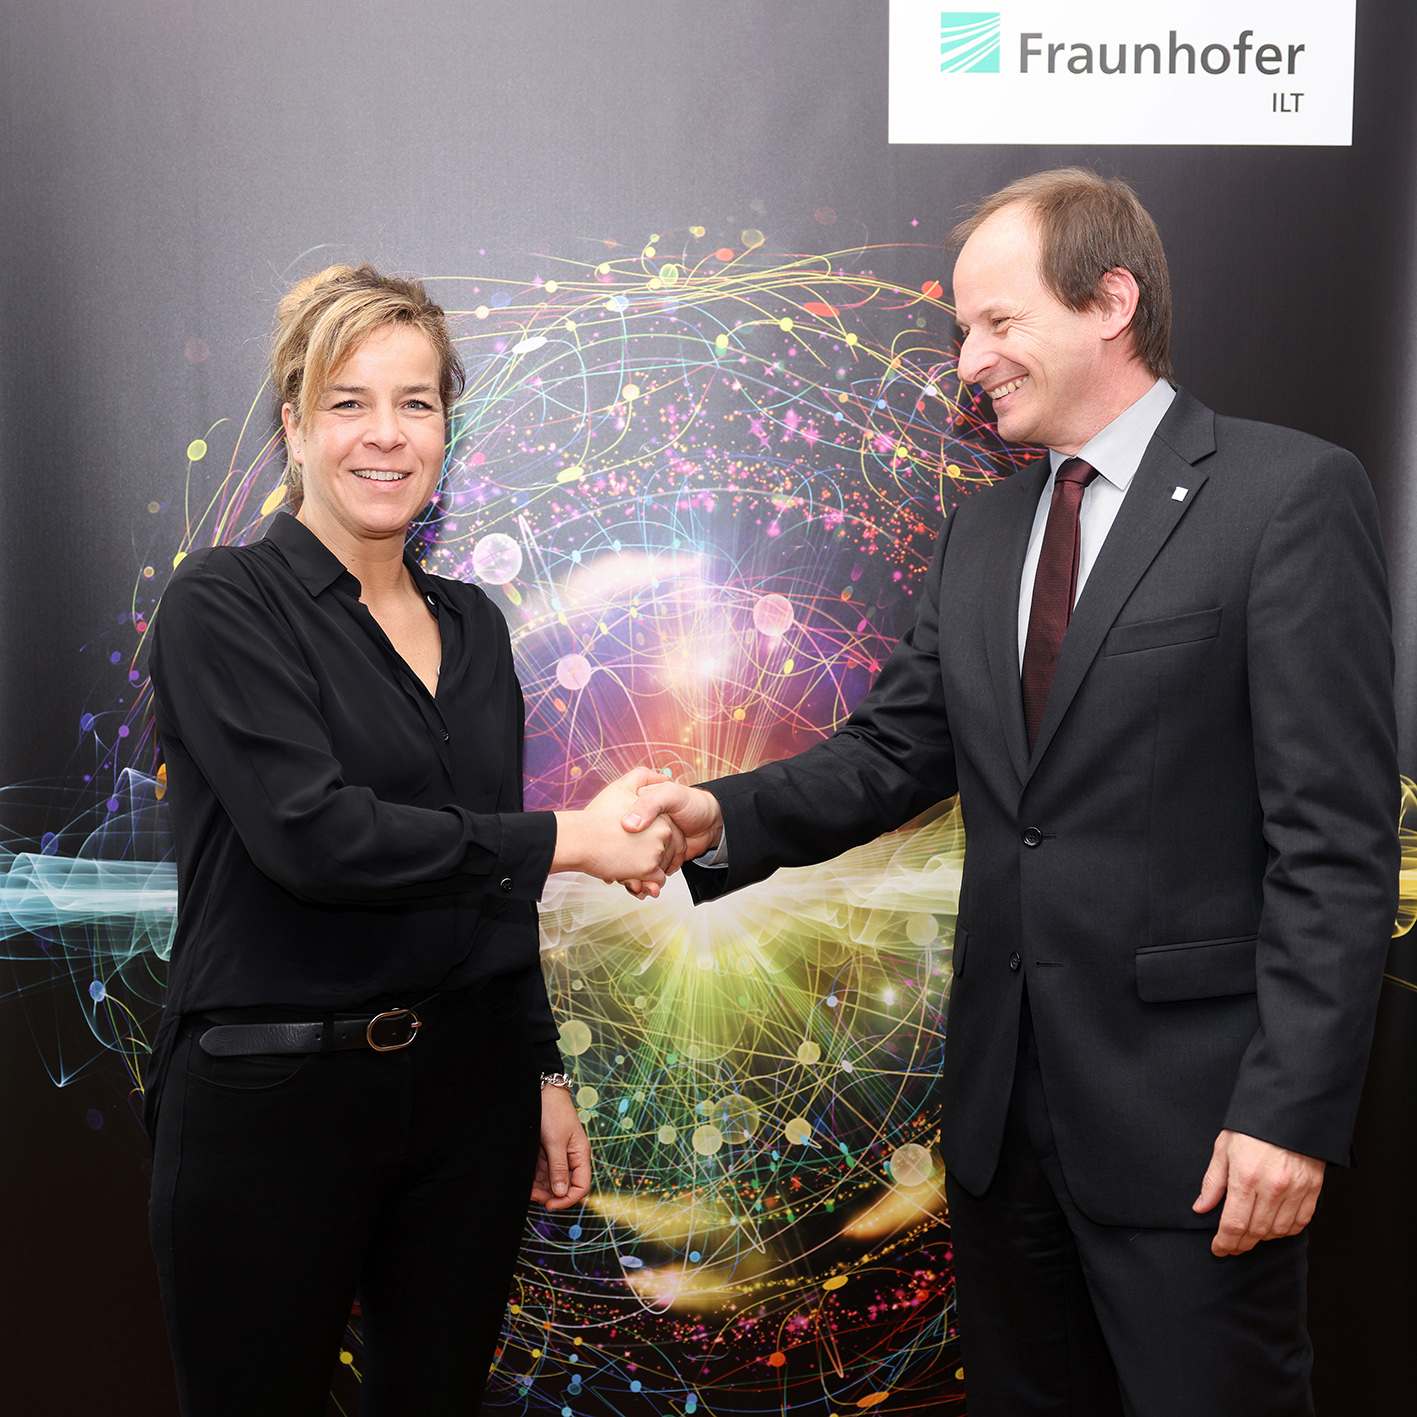 NRW-Wirtschaftsministerin Neubaur und Prof. Häfner, Leiter des Fraunhofer ILT, beim Startschuss für das Projekt »N-Quik«, gefördert durch das Land NRW.